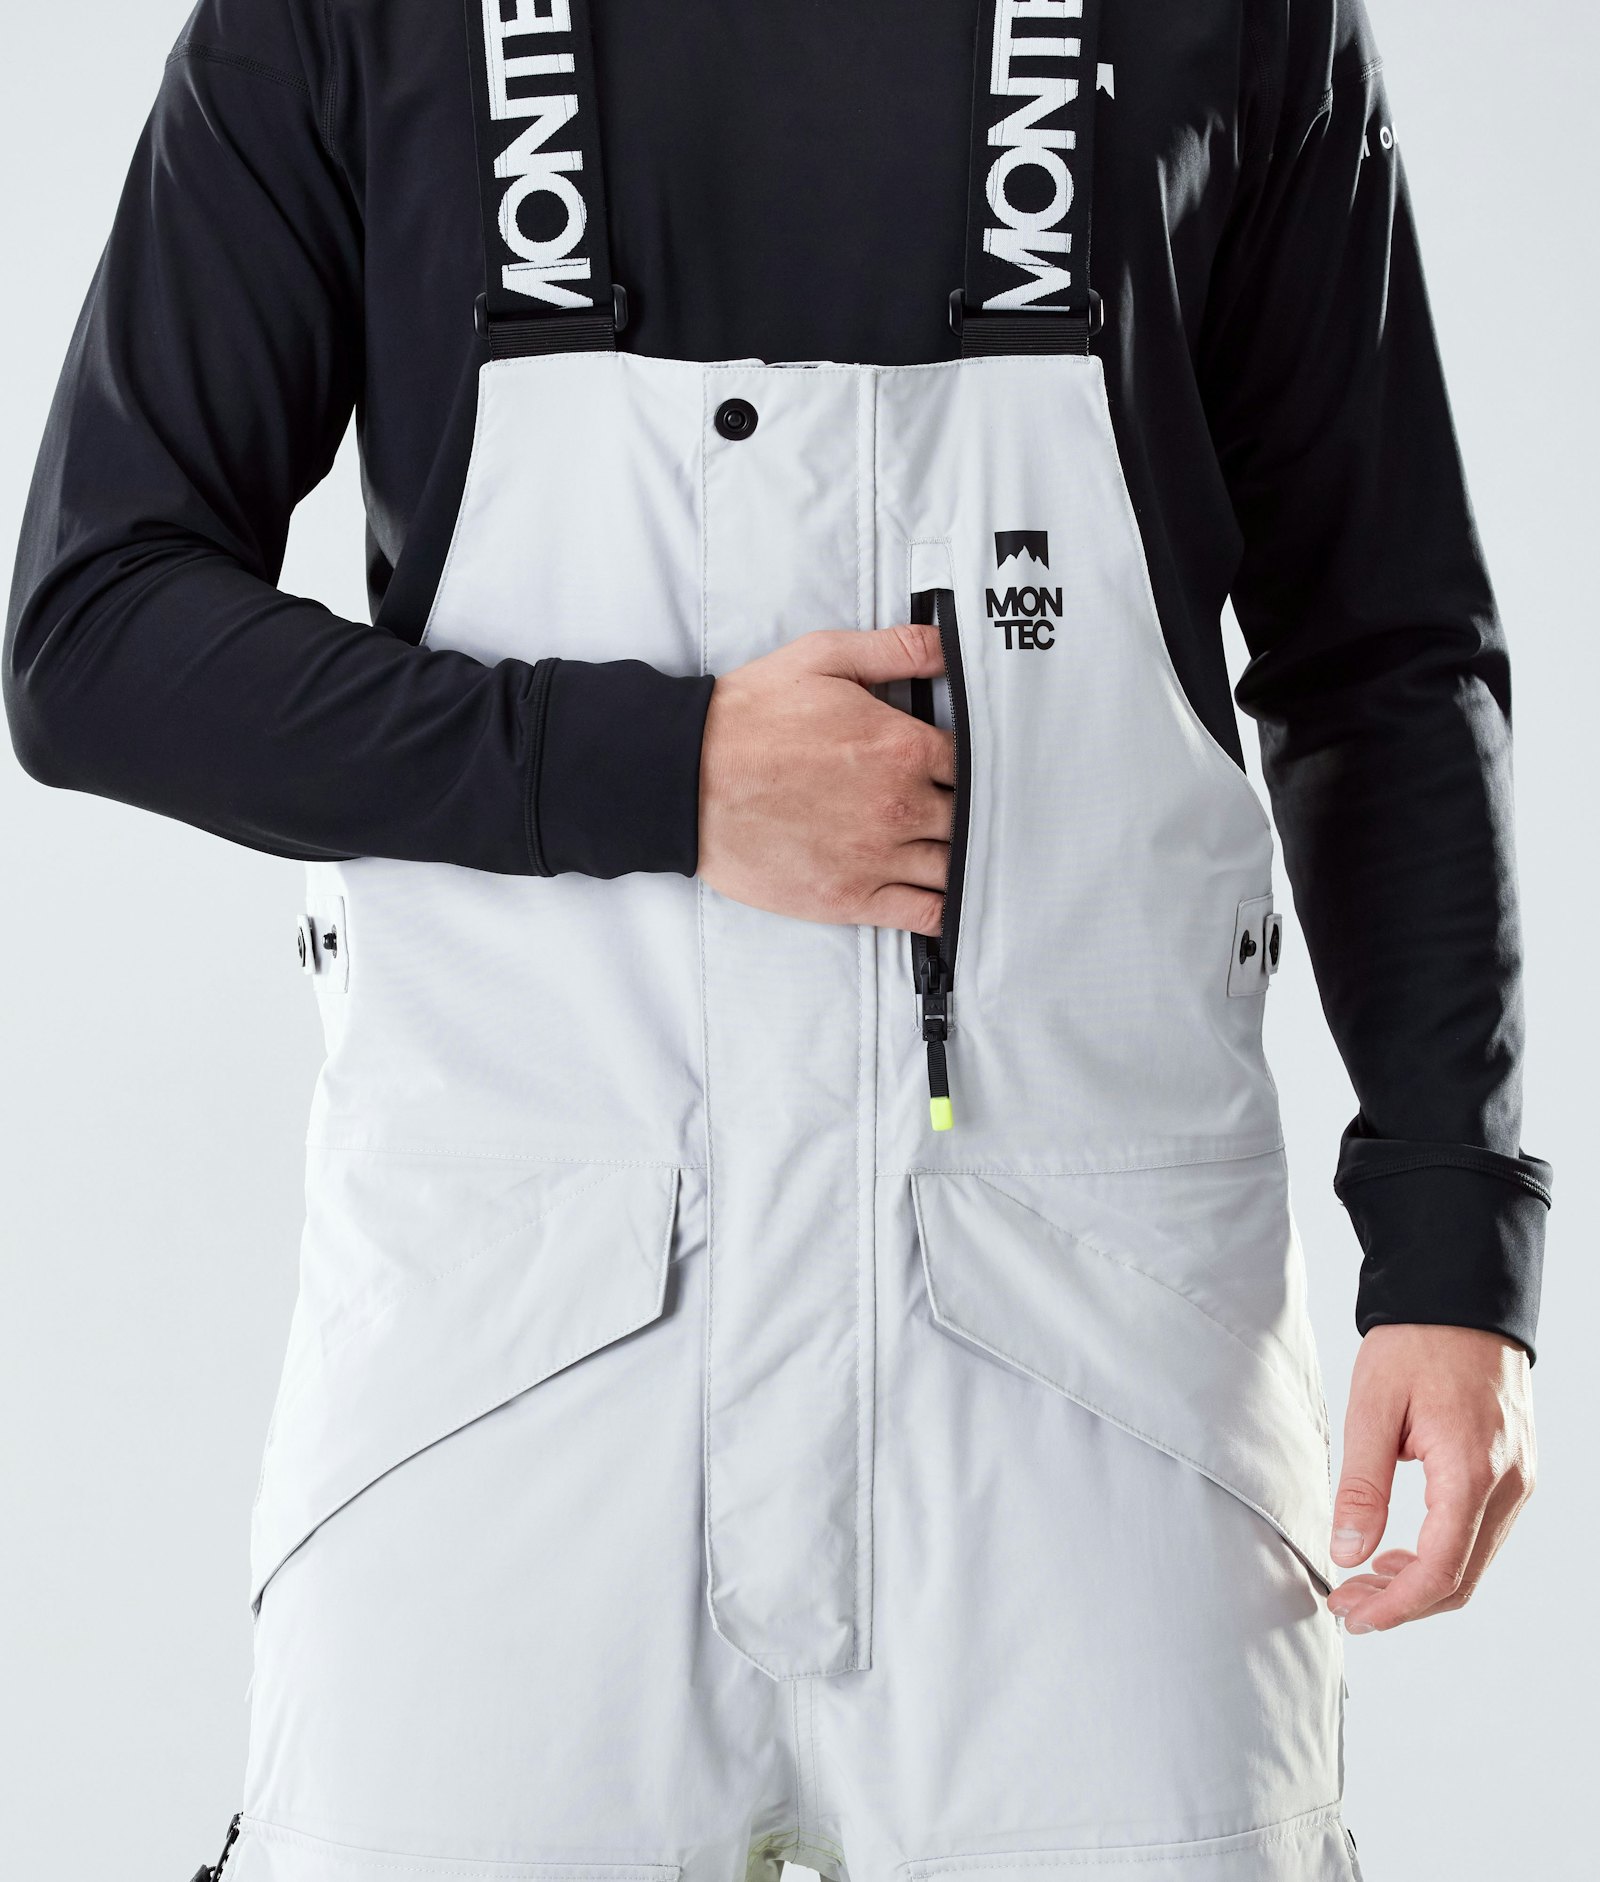 Fawk 2020 Spodnie Snowboardowe Mężczyźni Light Grey/Neon Yellow/Black